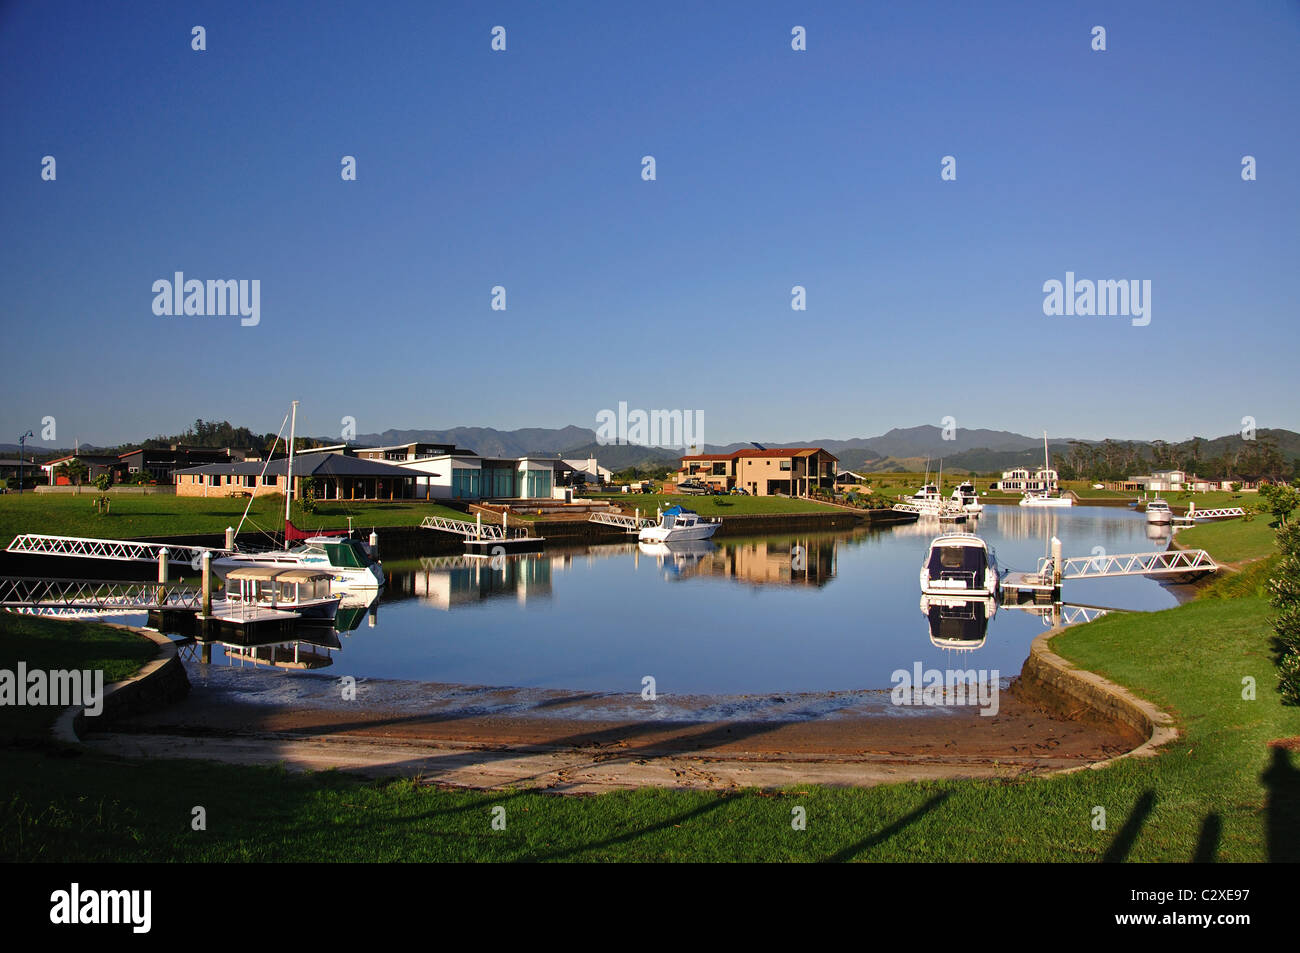 Whitianga Waterways Housing Development, Whitianga, Mercury Bay, Coromandel Peninsula, Waikato Region, North Island, New Zealand Stock Photo